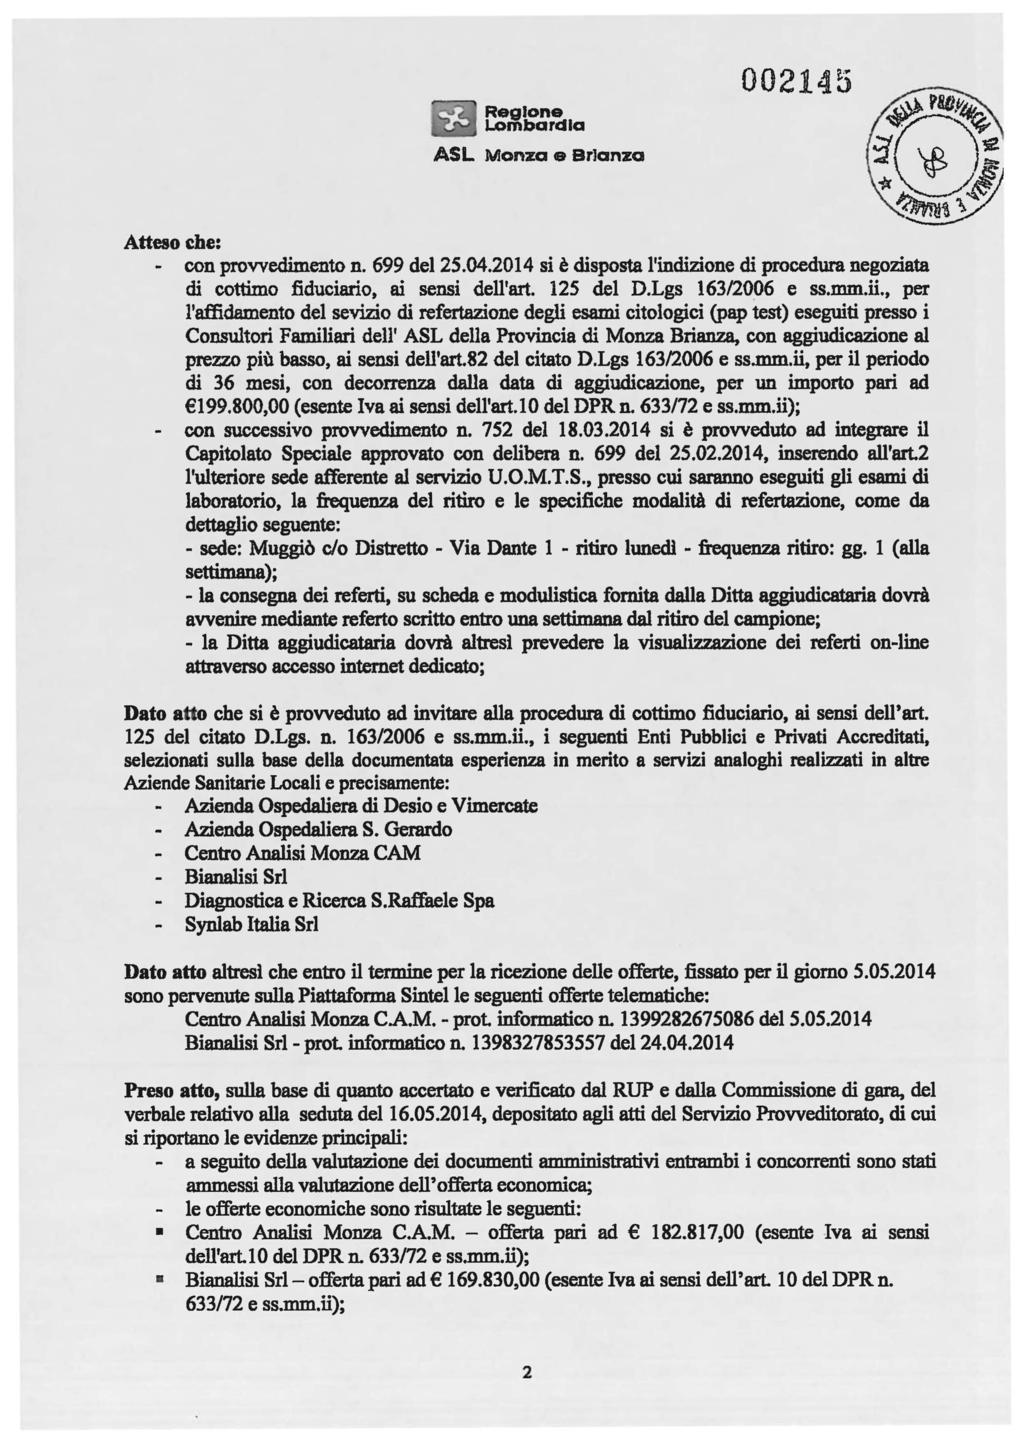 ASL Monza e Br]anza 002145 Atteso cile: - con provvedimento n. 699 del 25.04.2014 si è disposta l'indizione di procedura negoziata di cottimo fiduciario, ai sensi dell'art. 125 del D.